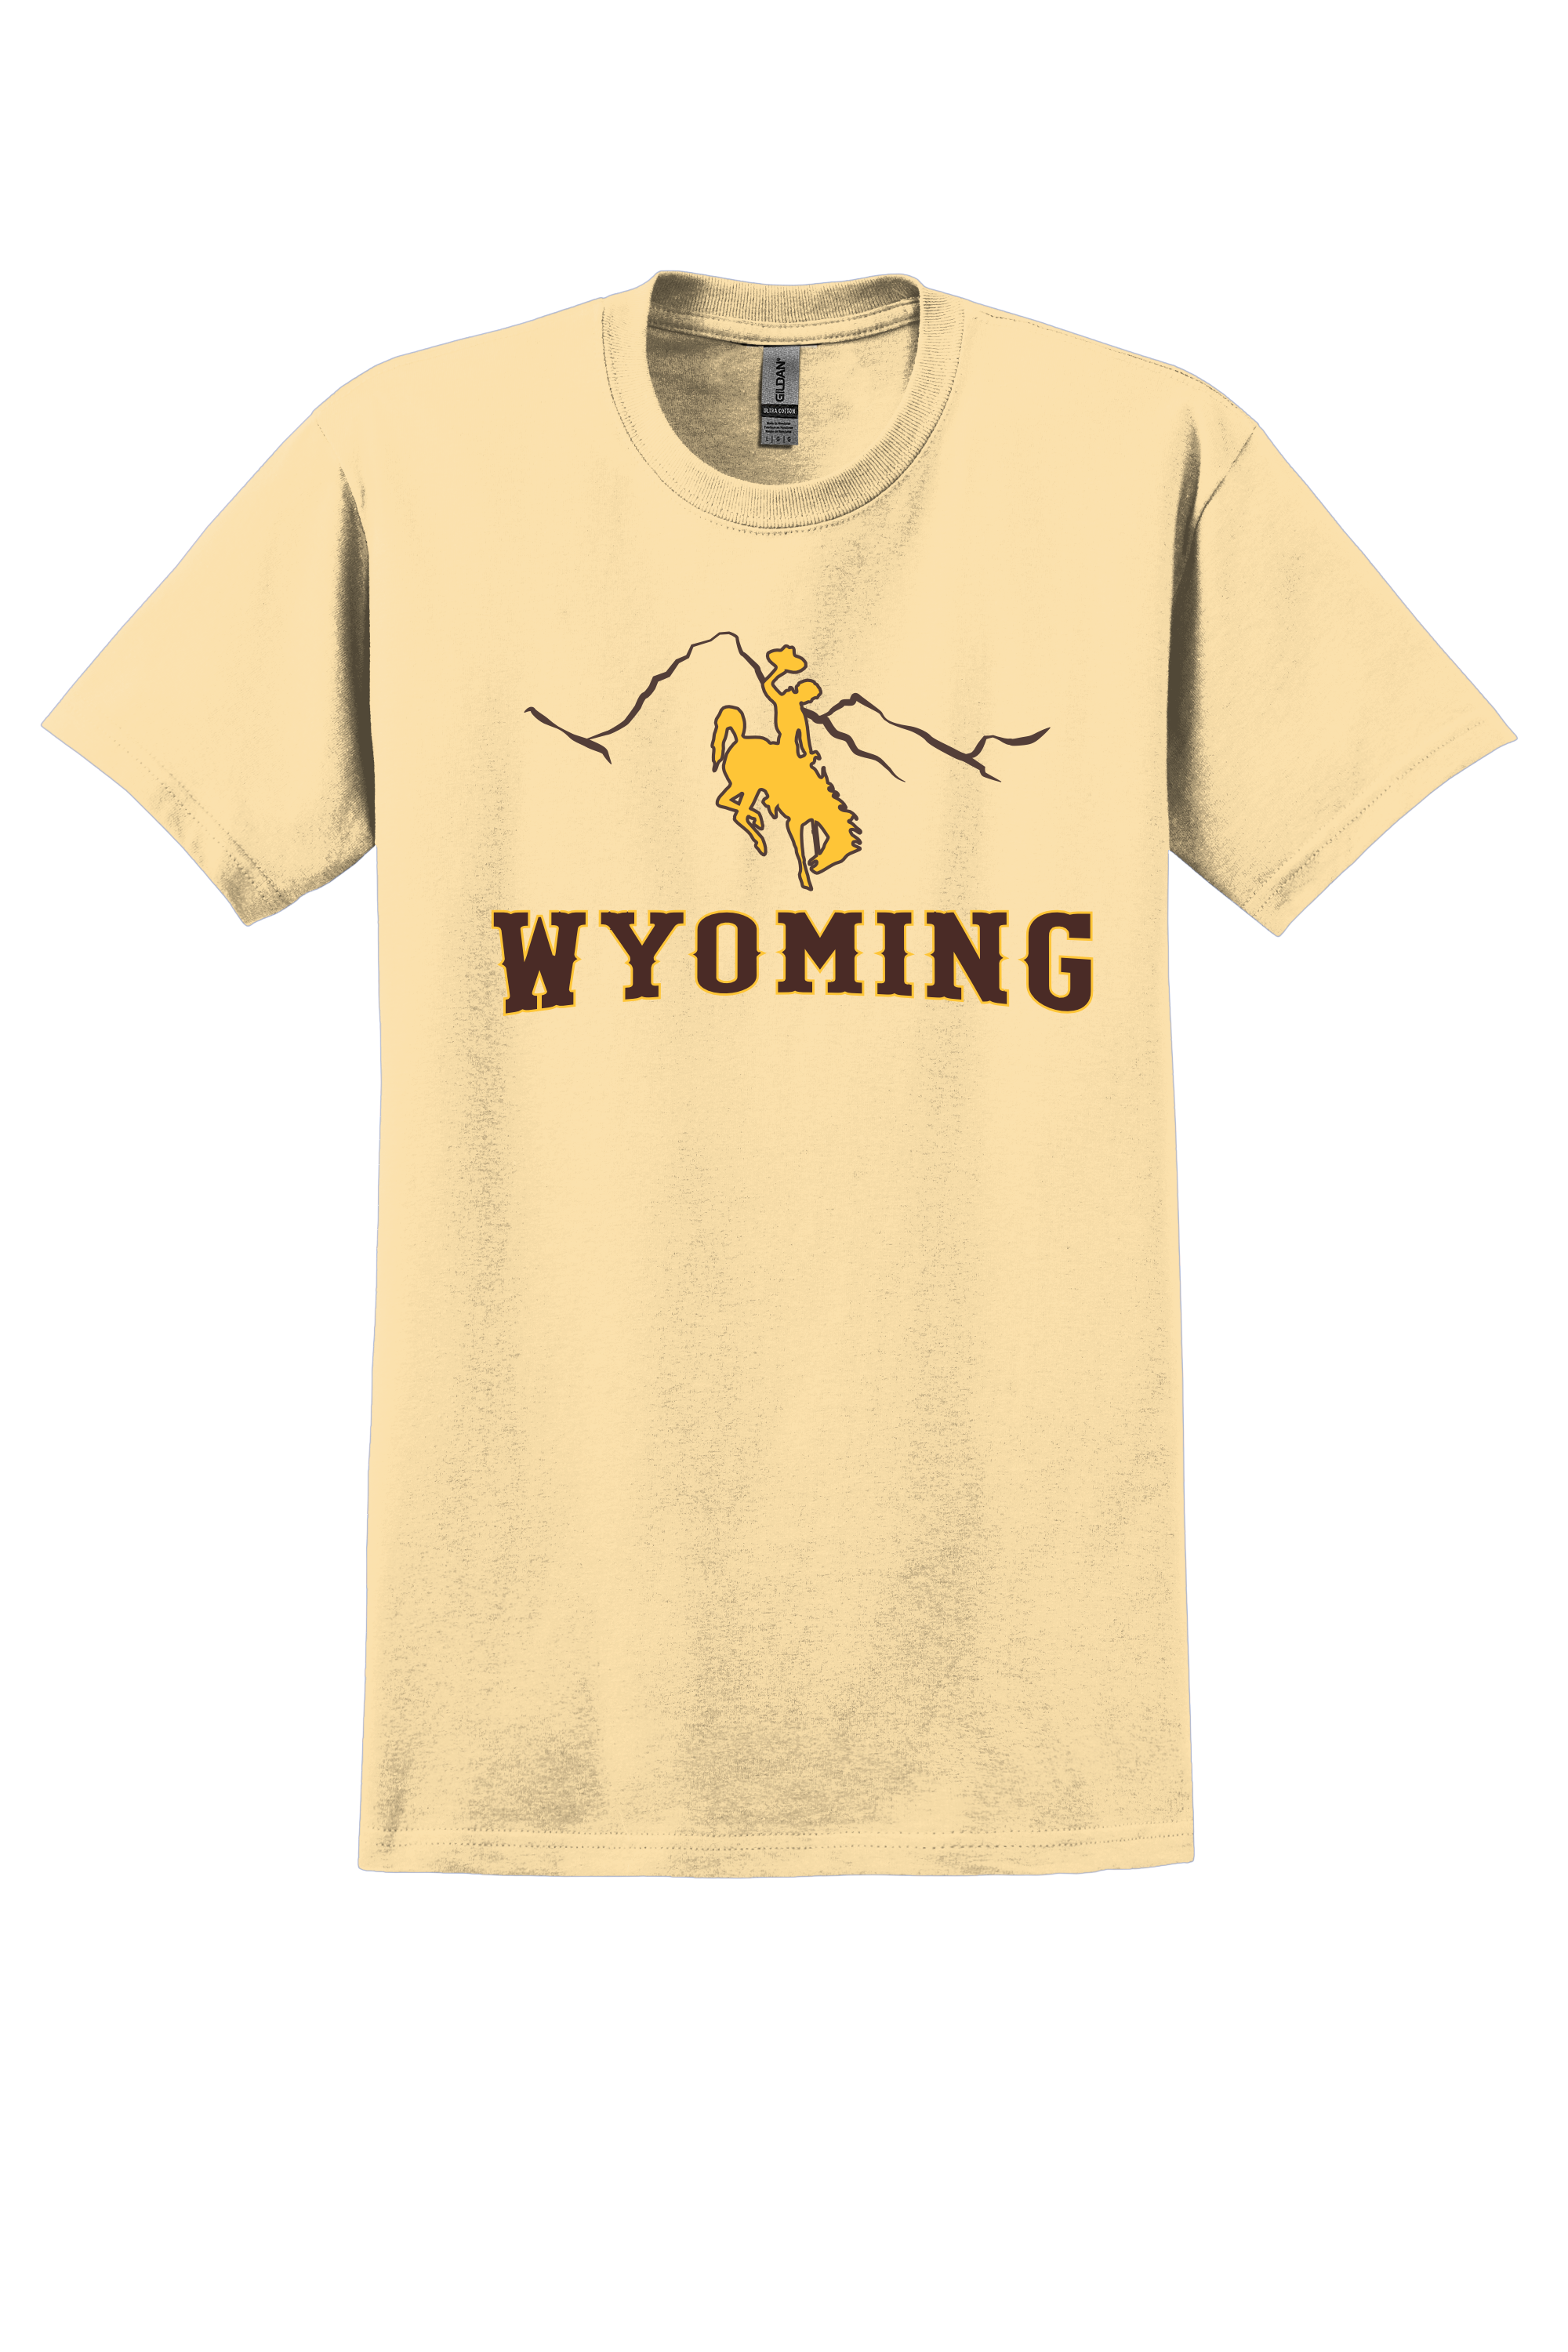 Wyoming Tetons Shirt